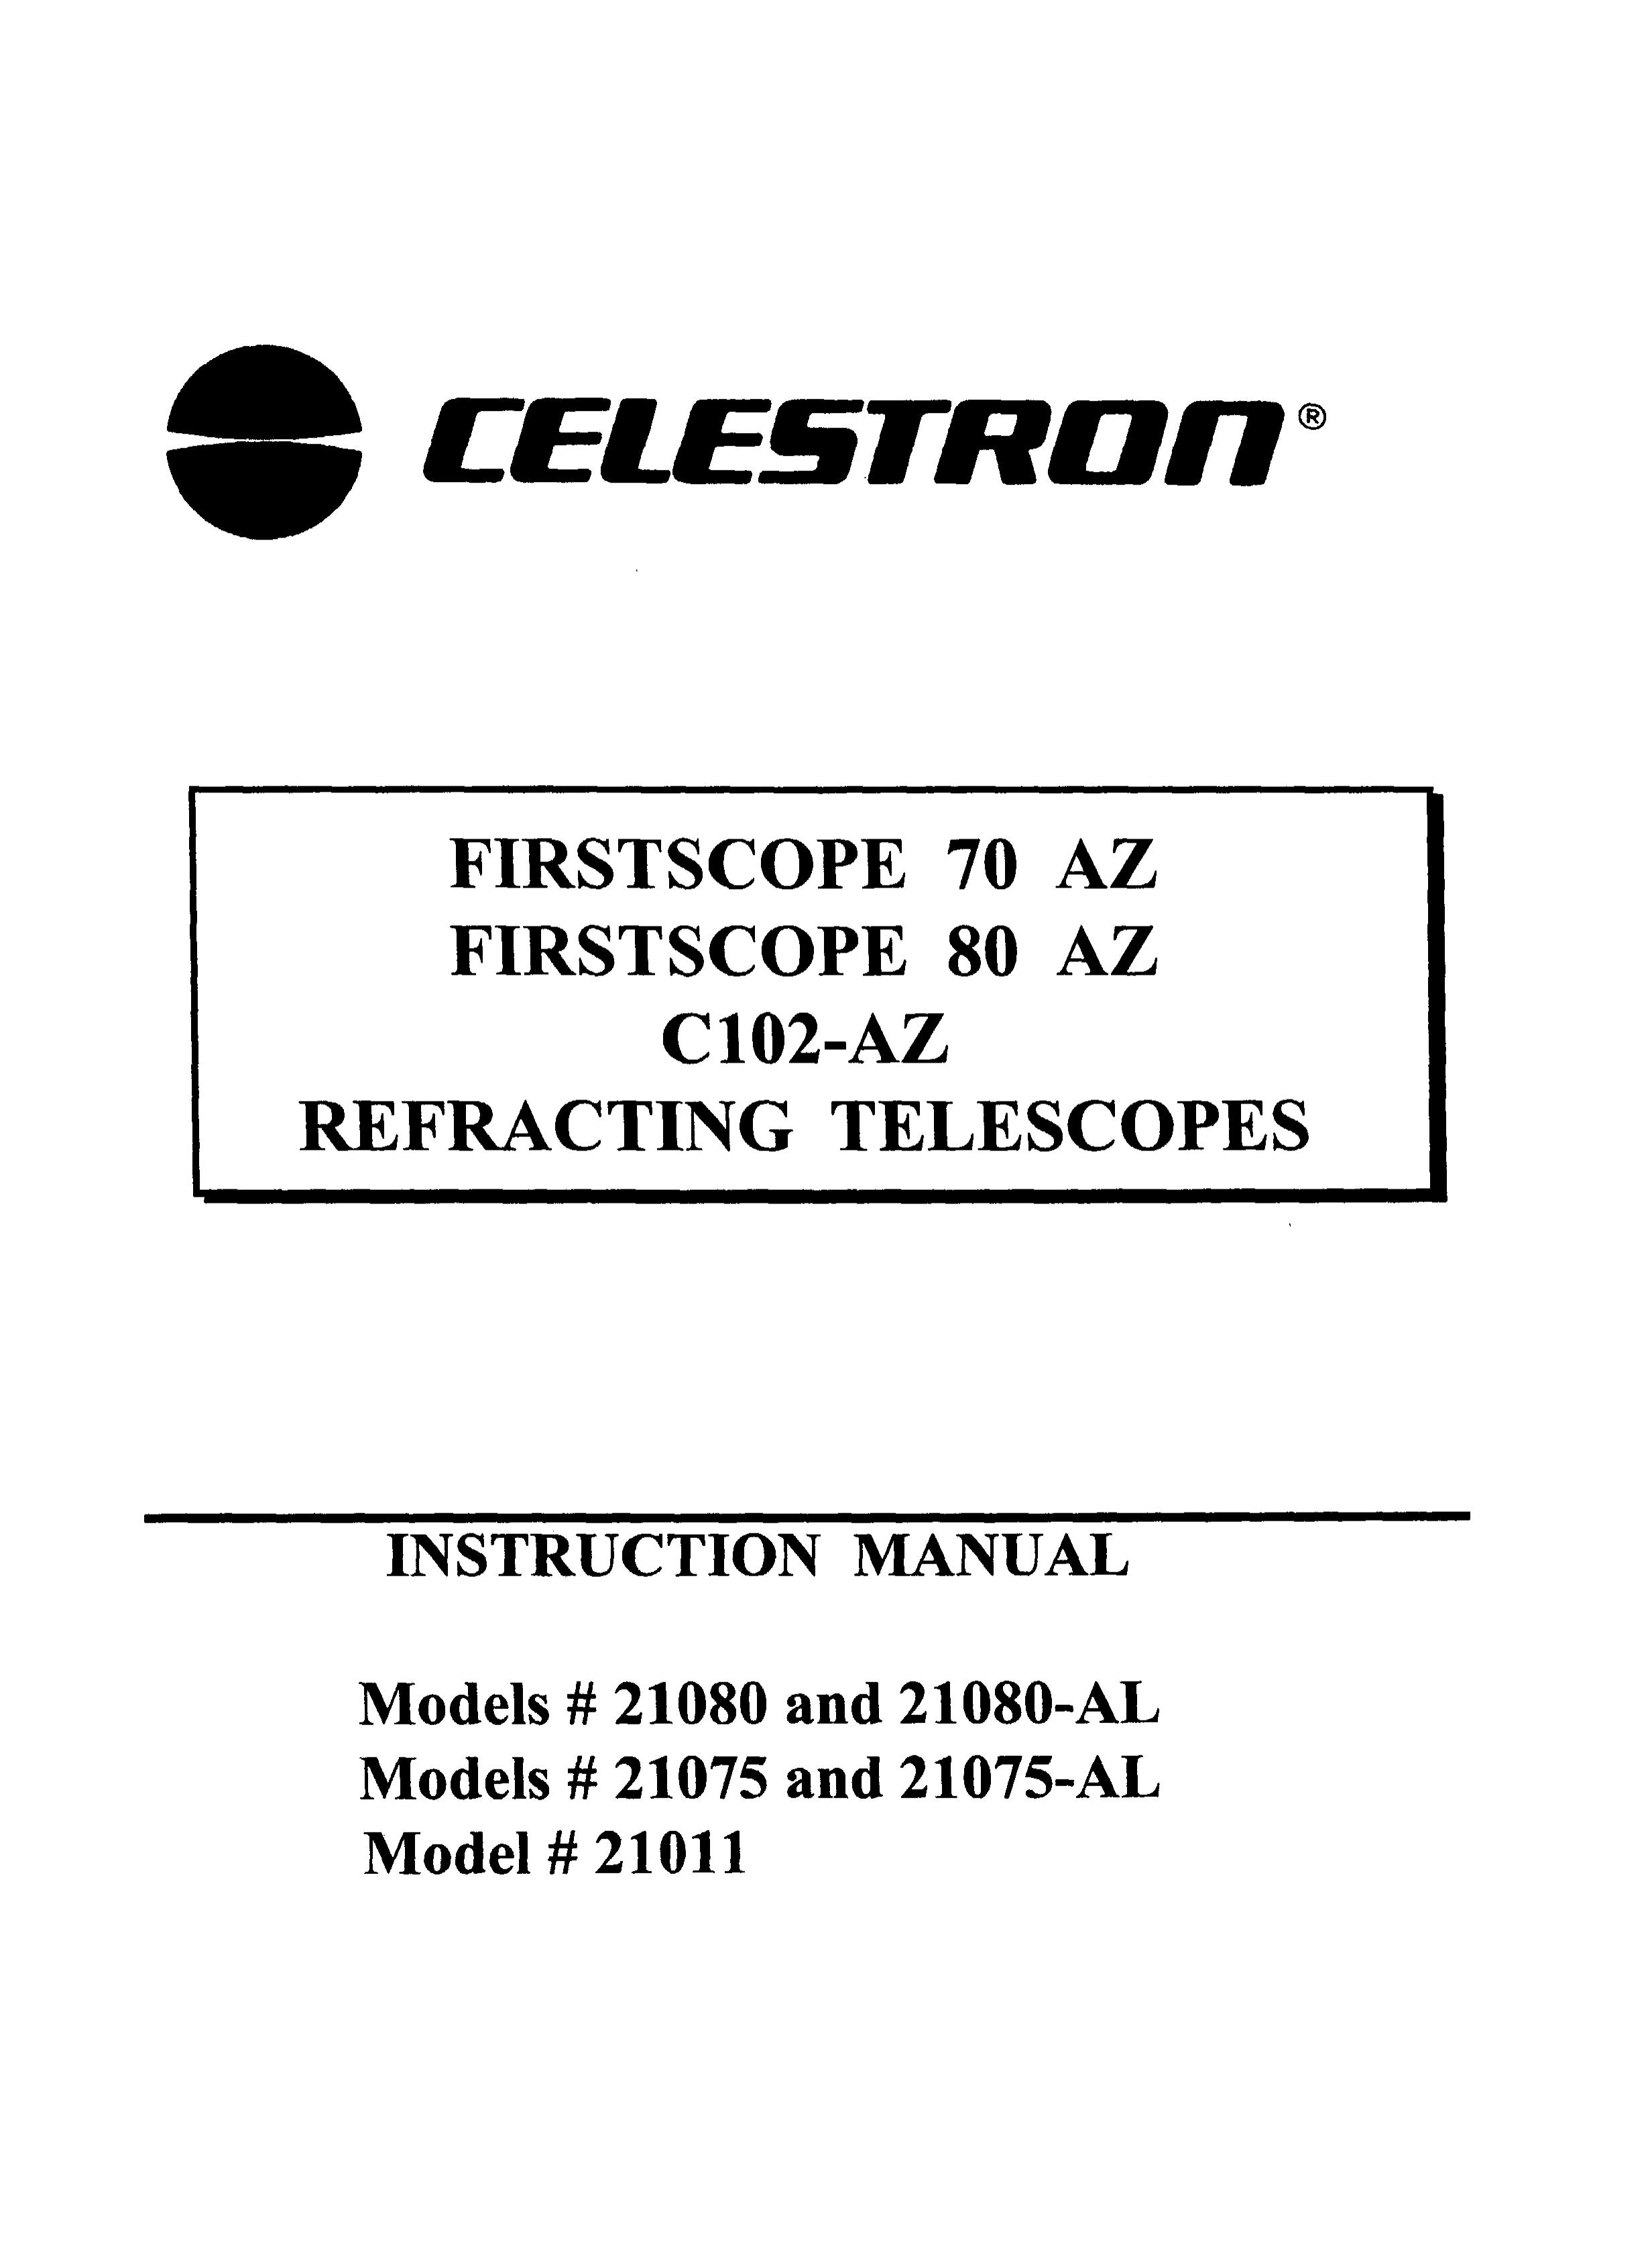 Celestron 21075-AL Telescope User Manual